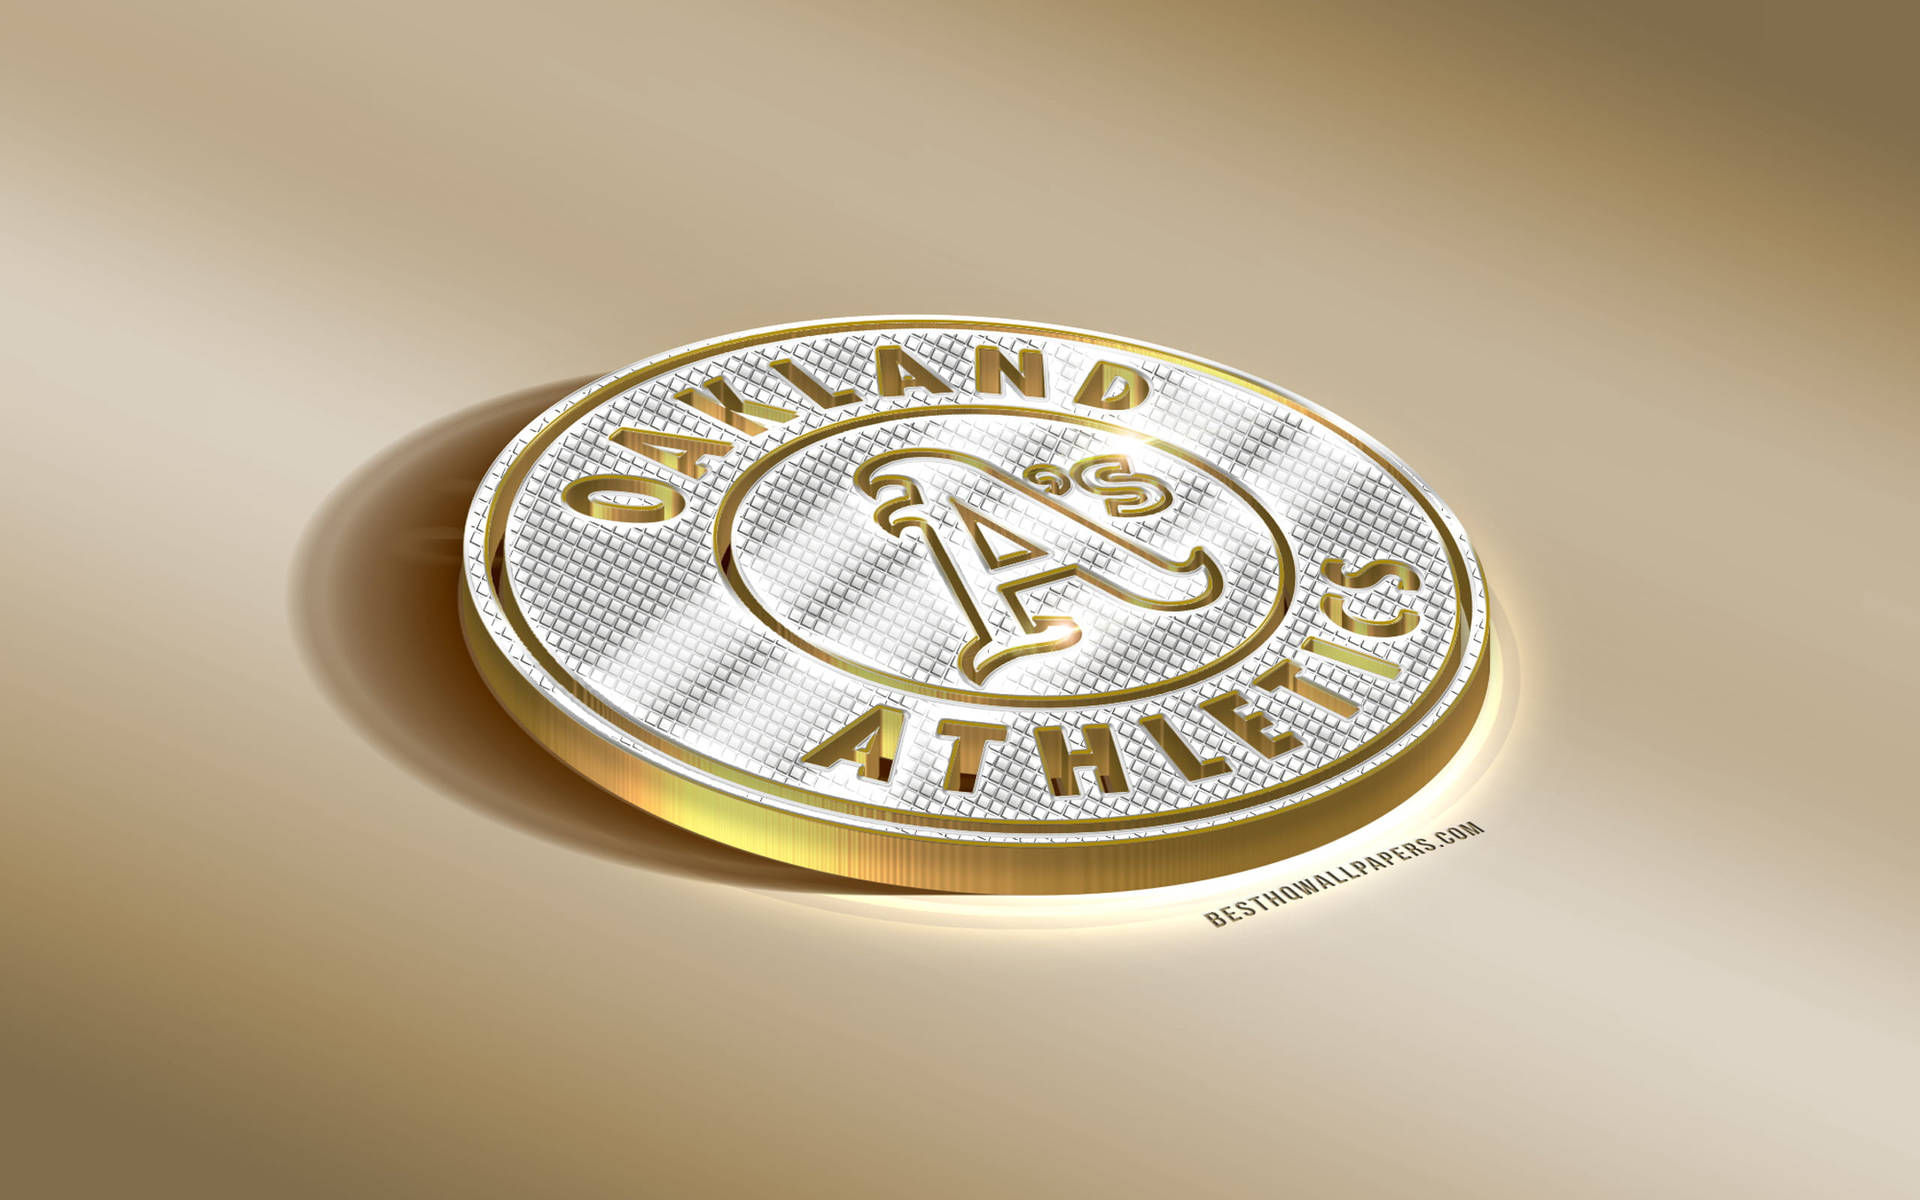 Oakland Athletics Medal Background